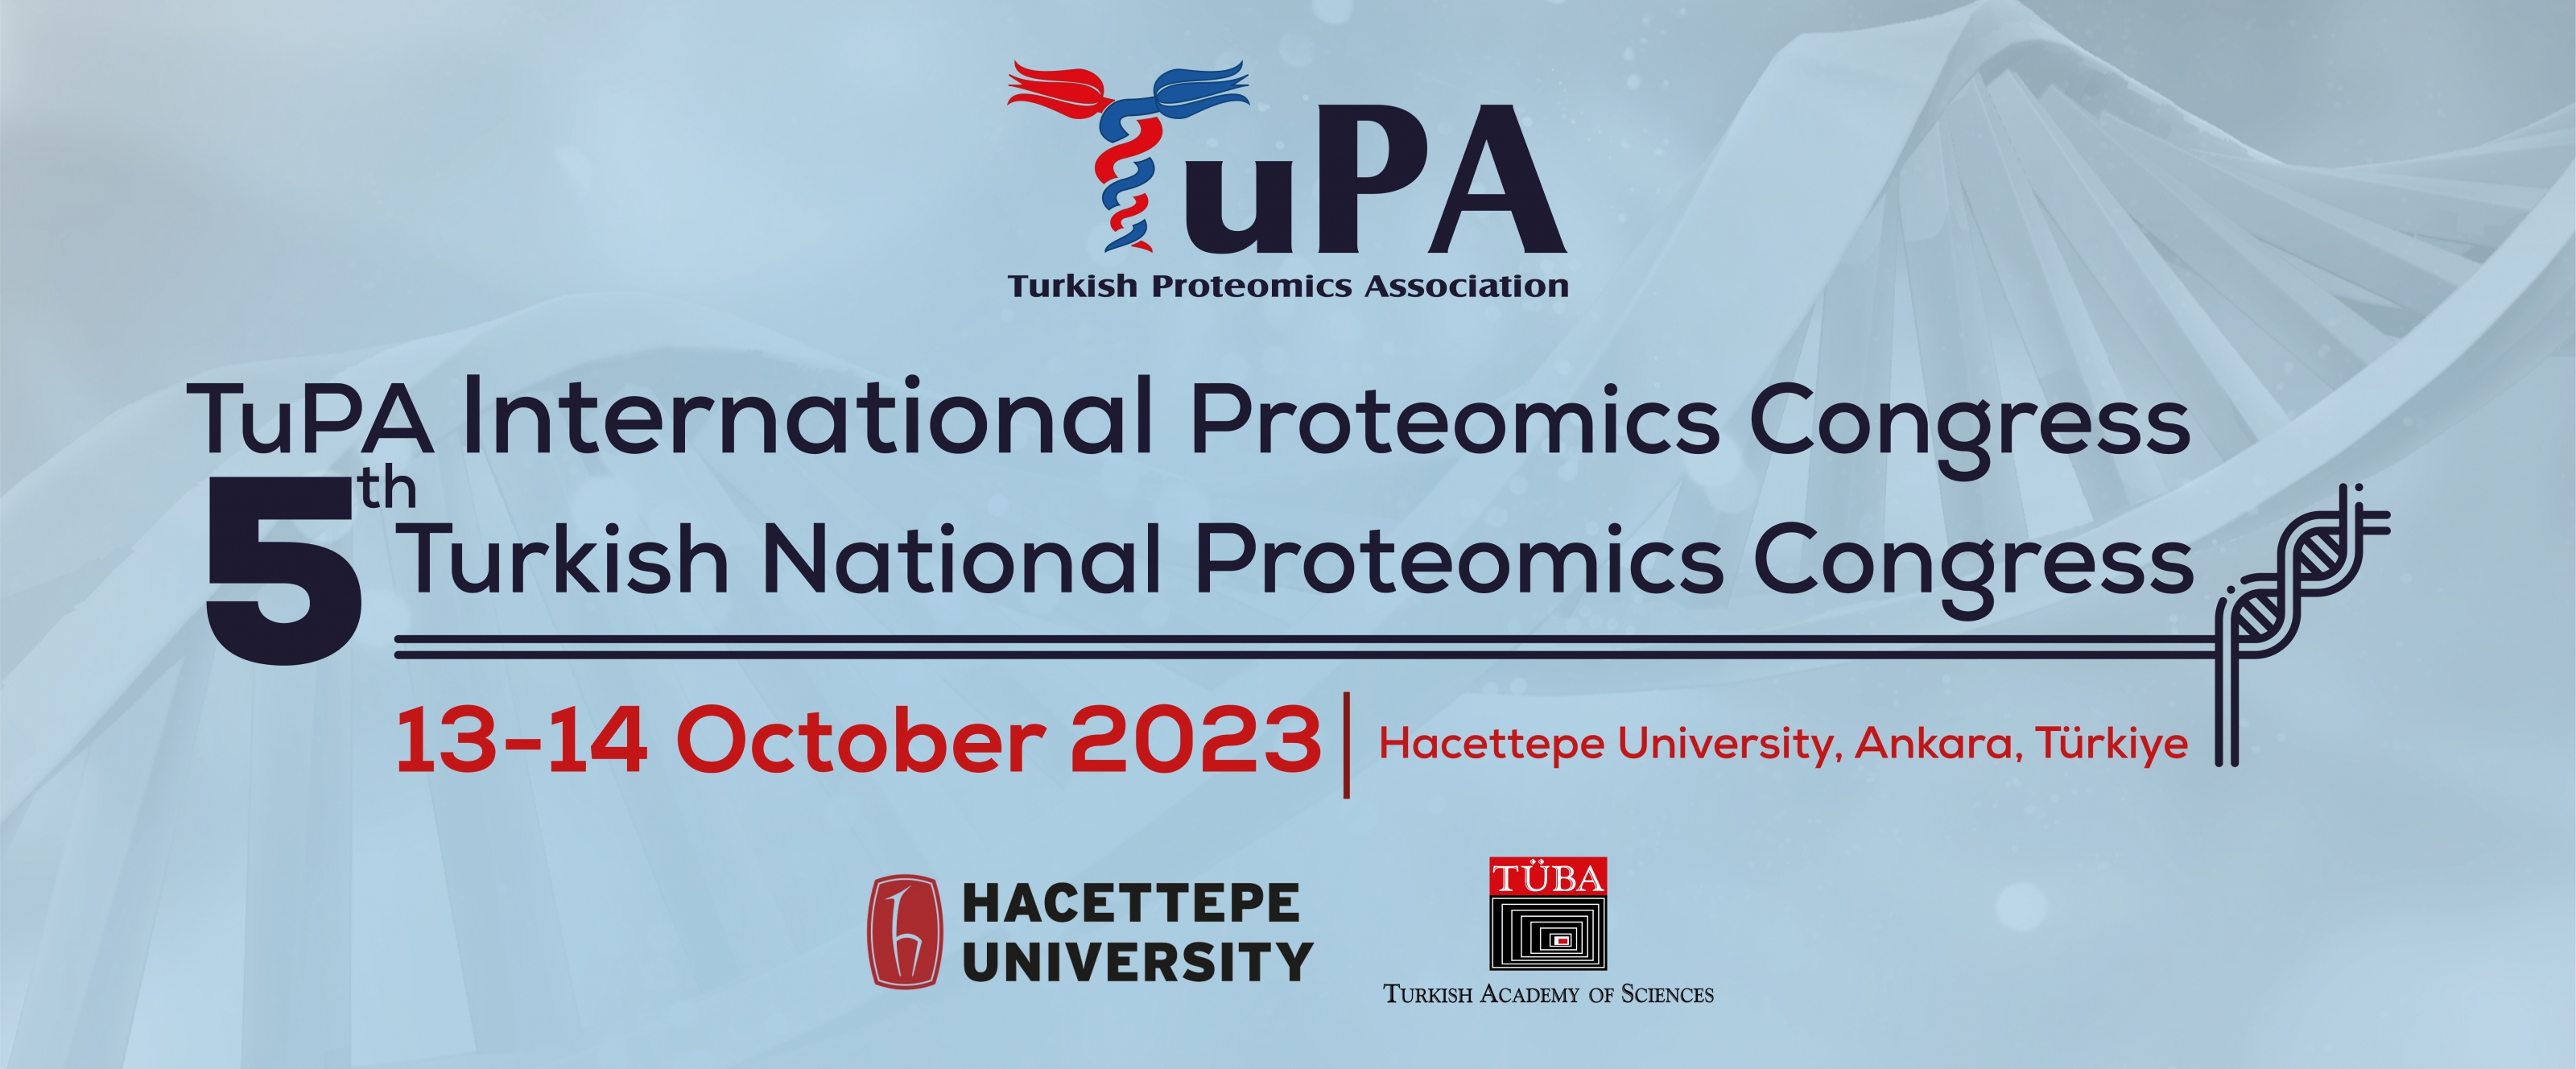 TuPA International Proteomics Congress // 5th National Proteomics Congress